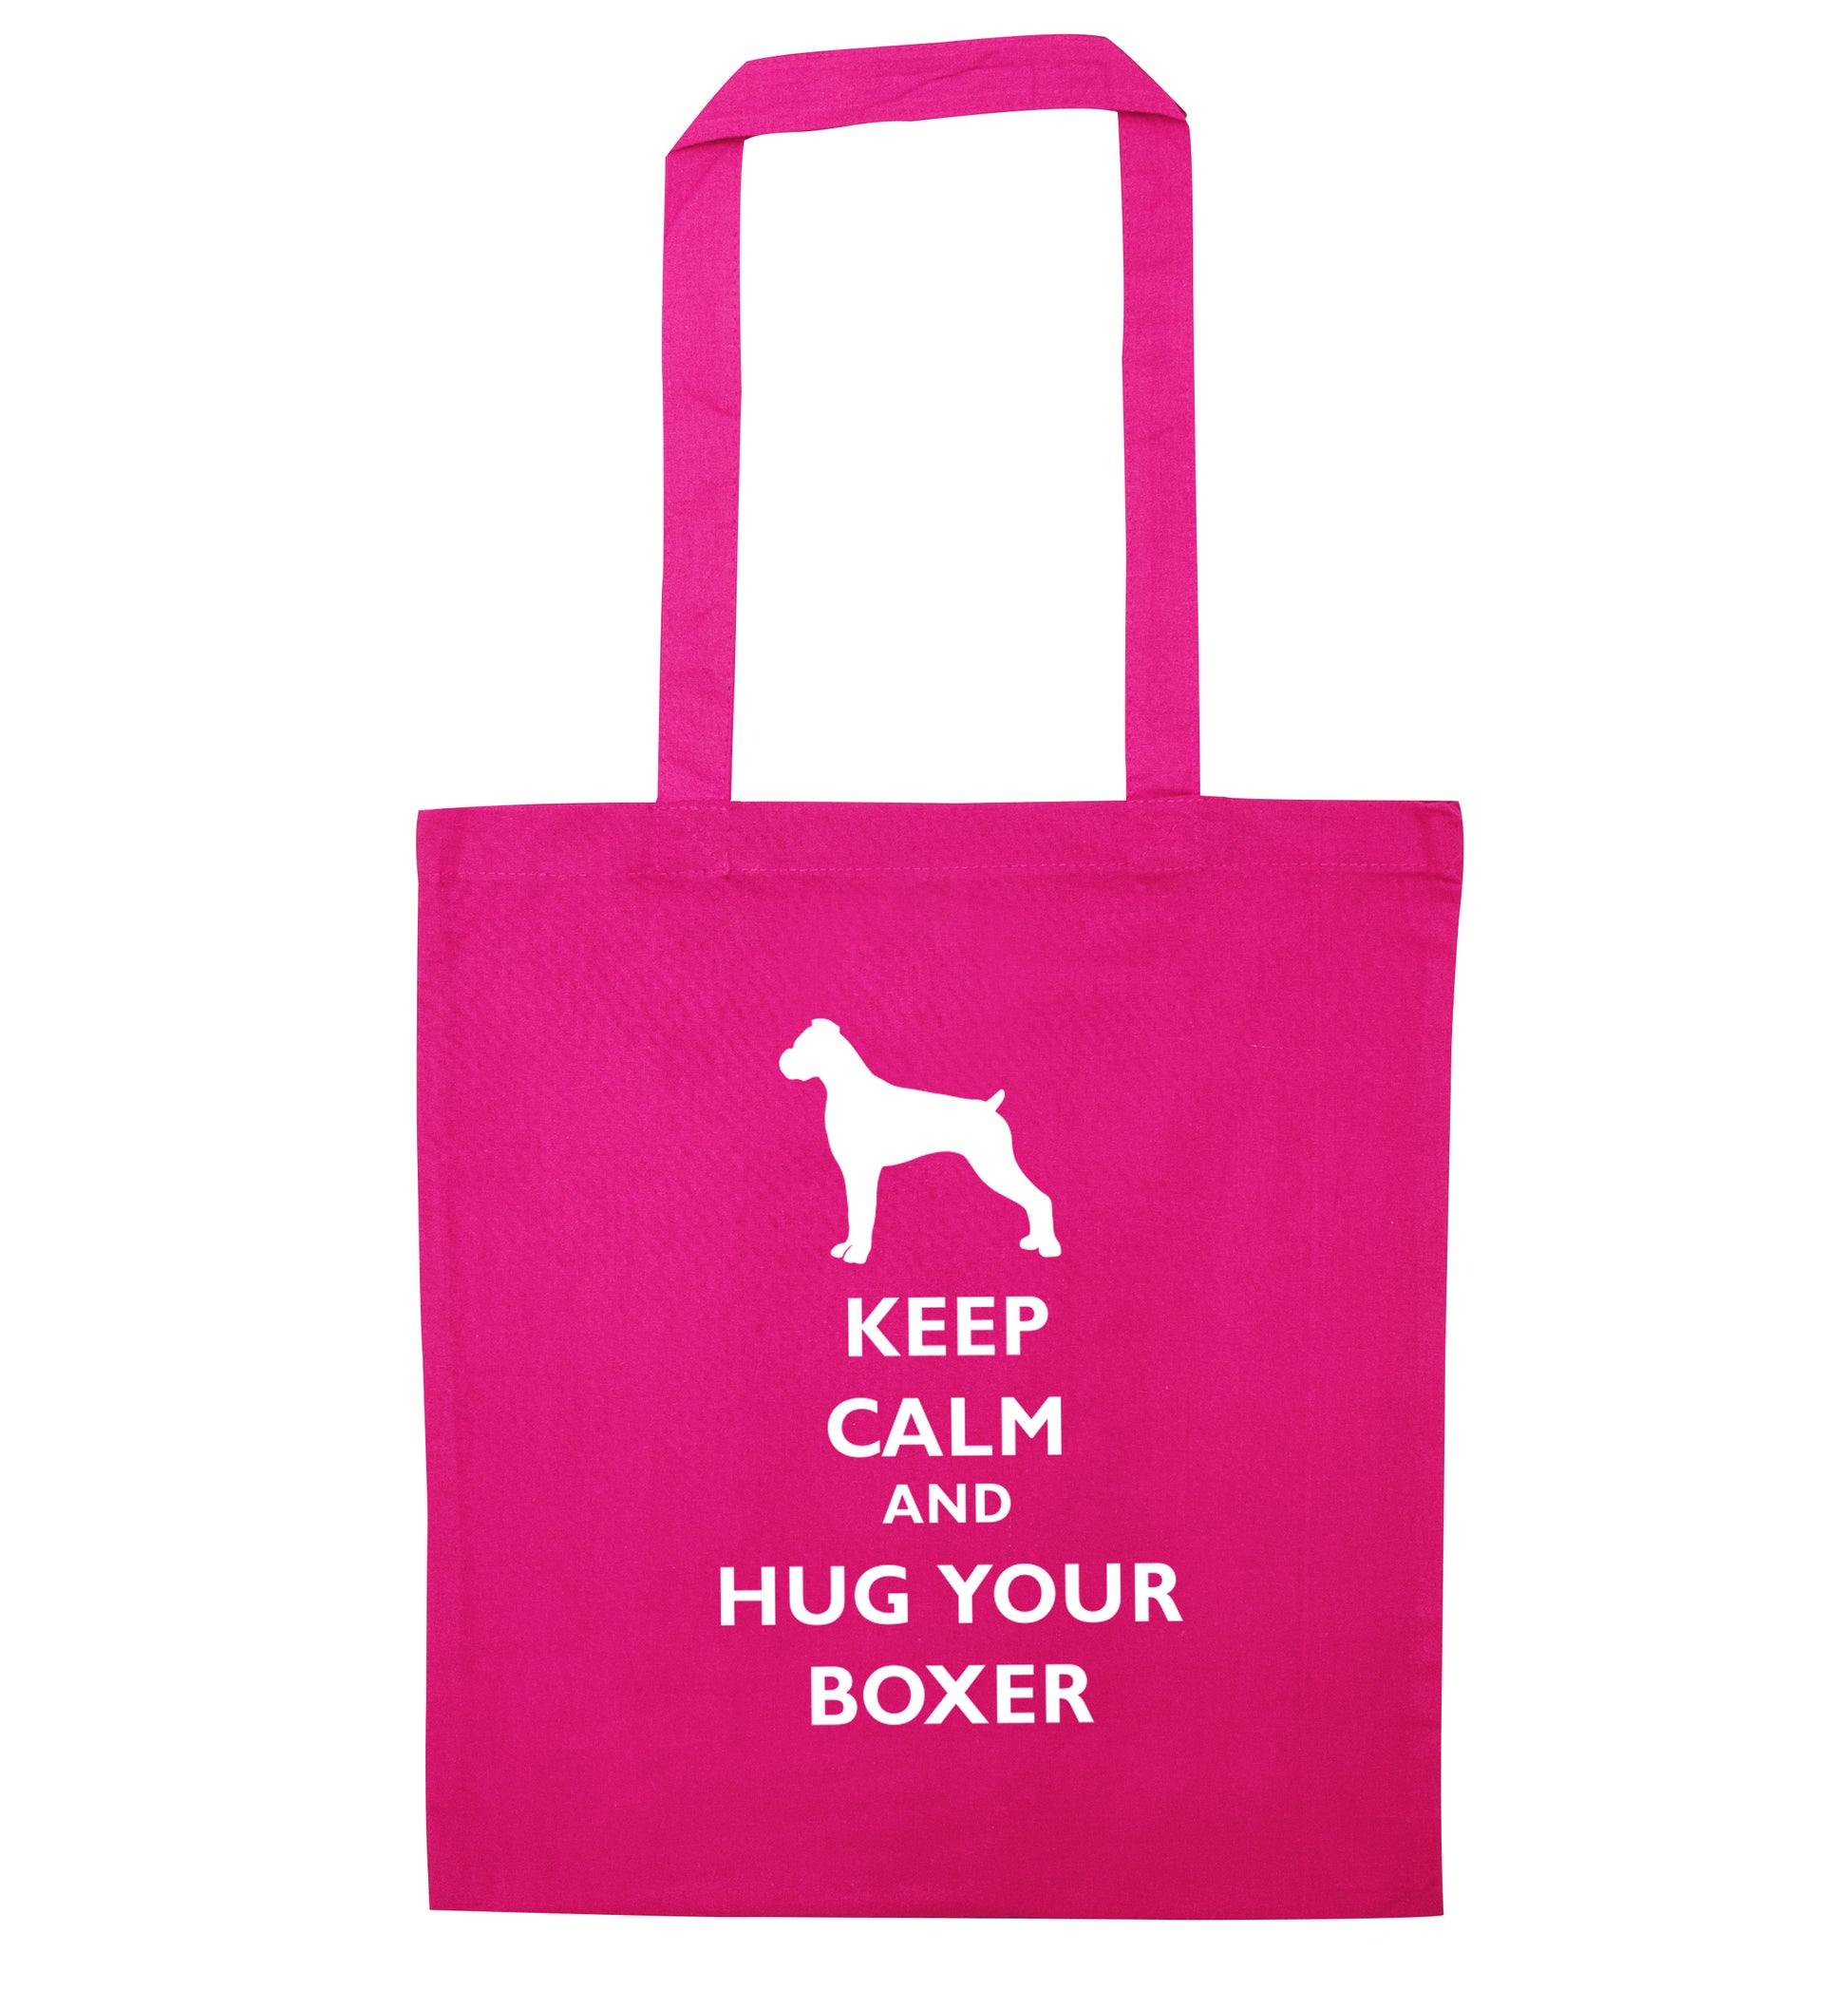 Keep calm and hug your boxer pink tote bag